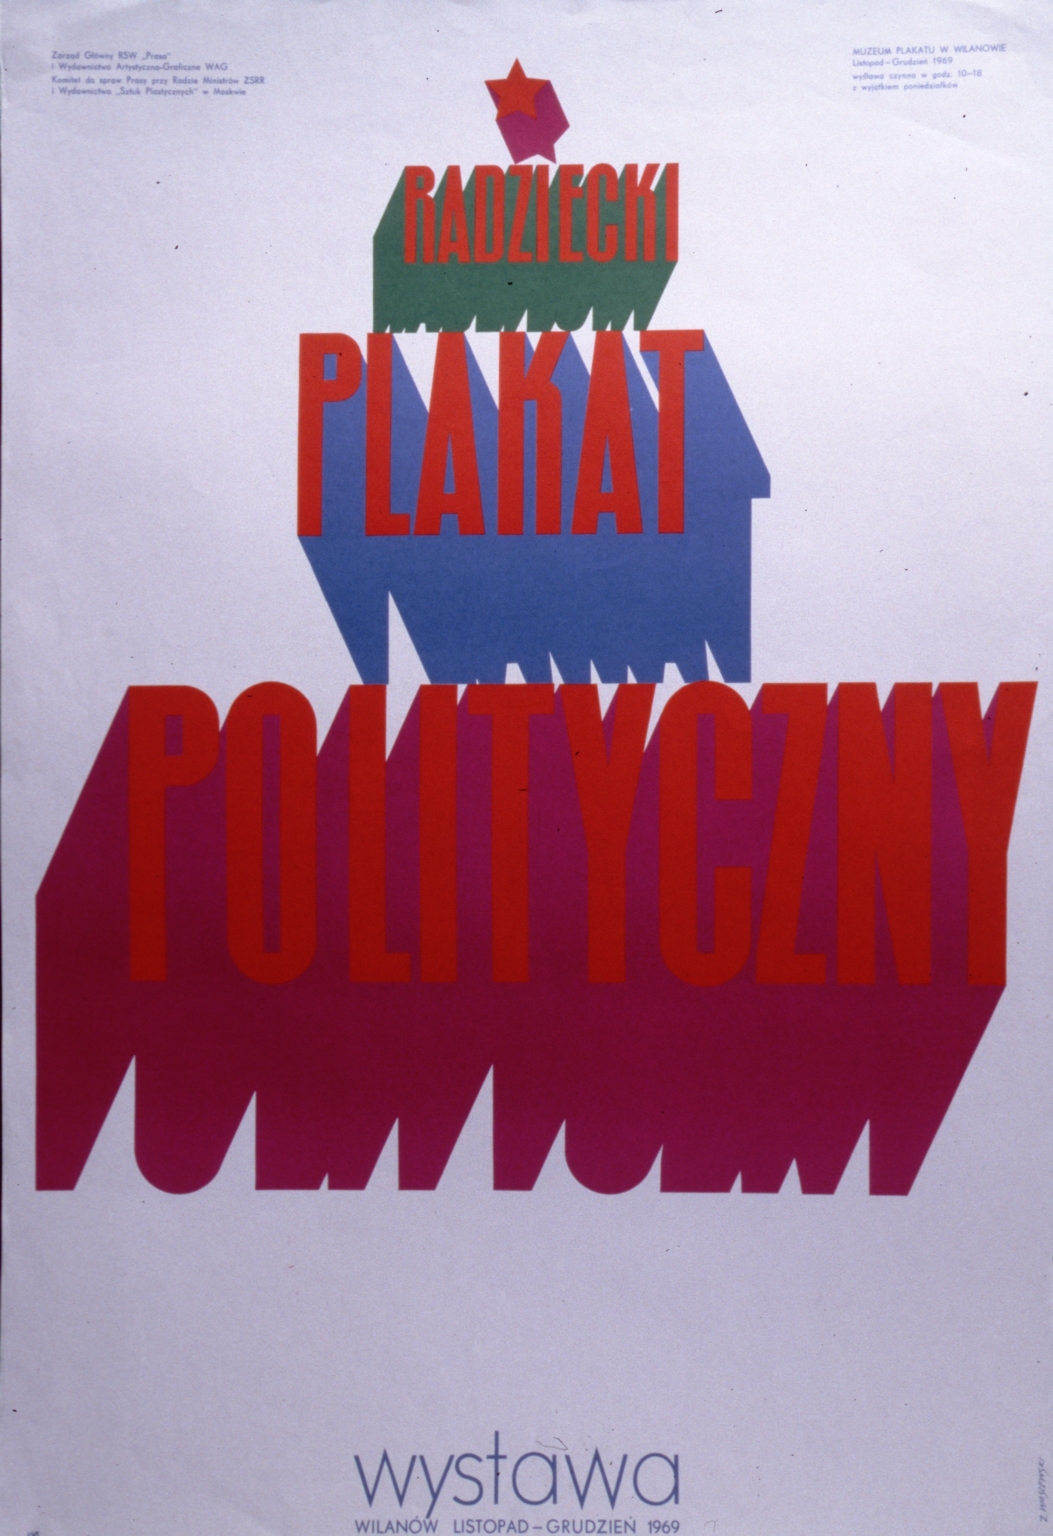 Radziecki plakat polityczny: wystawa, listopad-grudzien1969 Muzeum Plakatu w Wilanowie